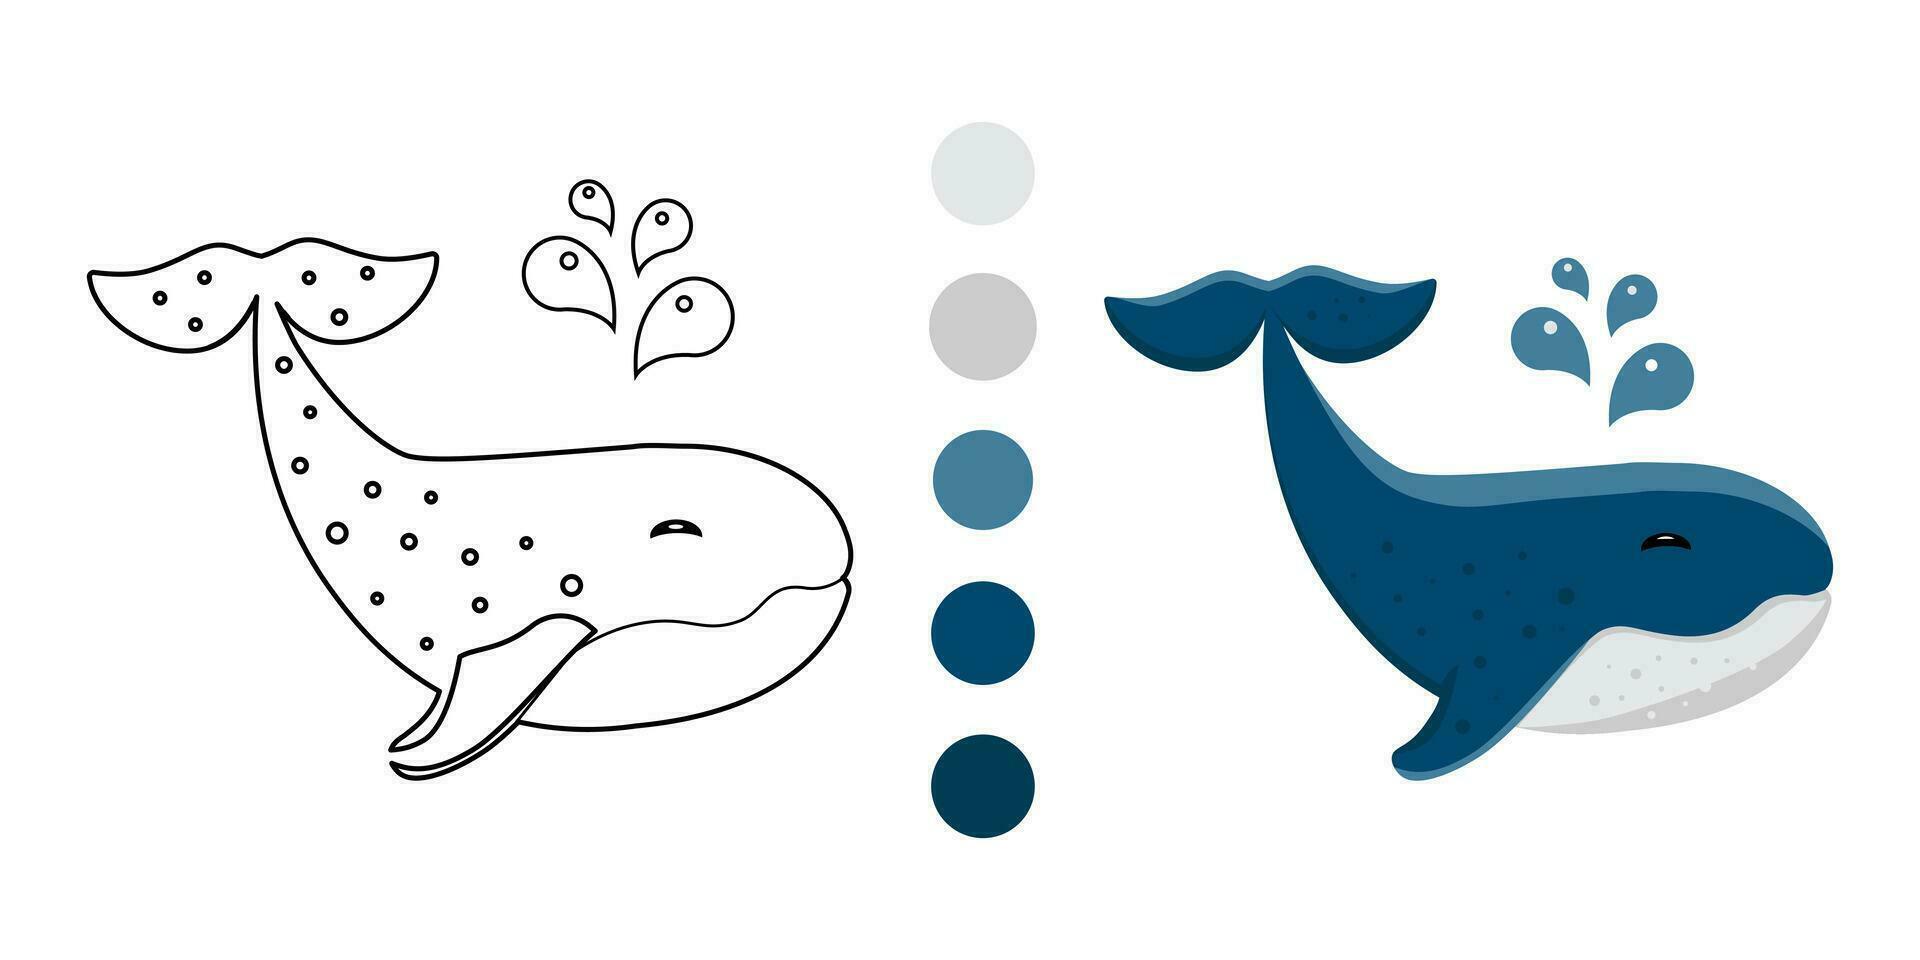 crianças coloração página - azul baleia. engraçado pouco. vetor ilustração. isolado em branco fundo.